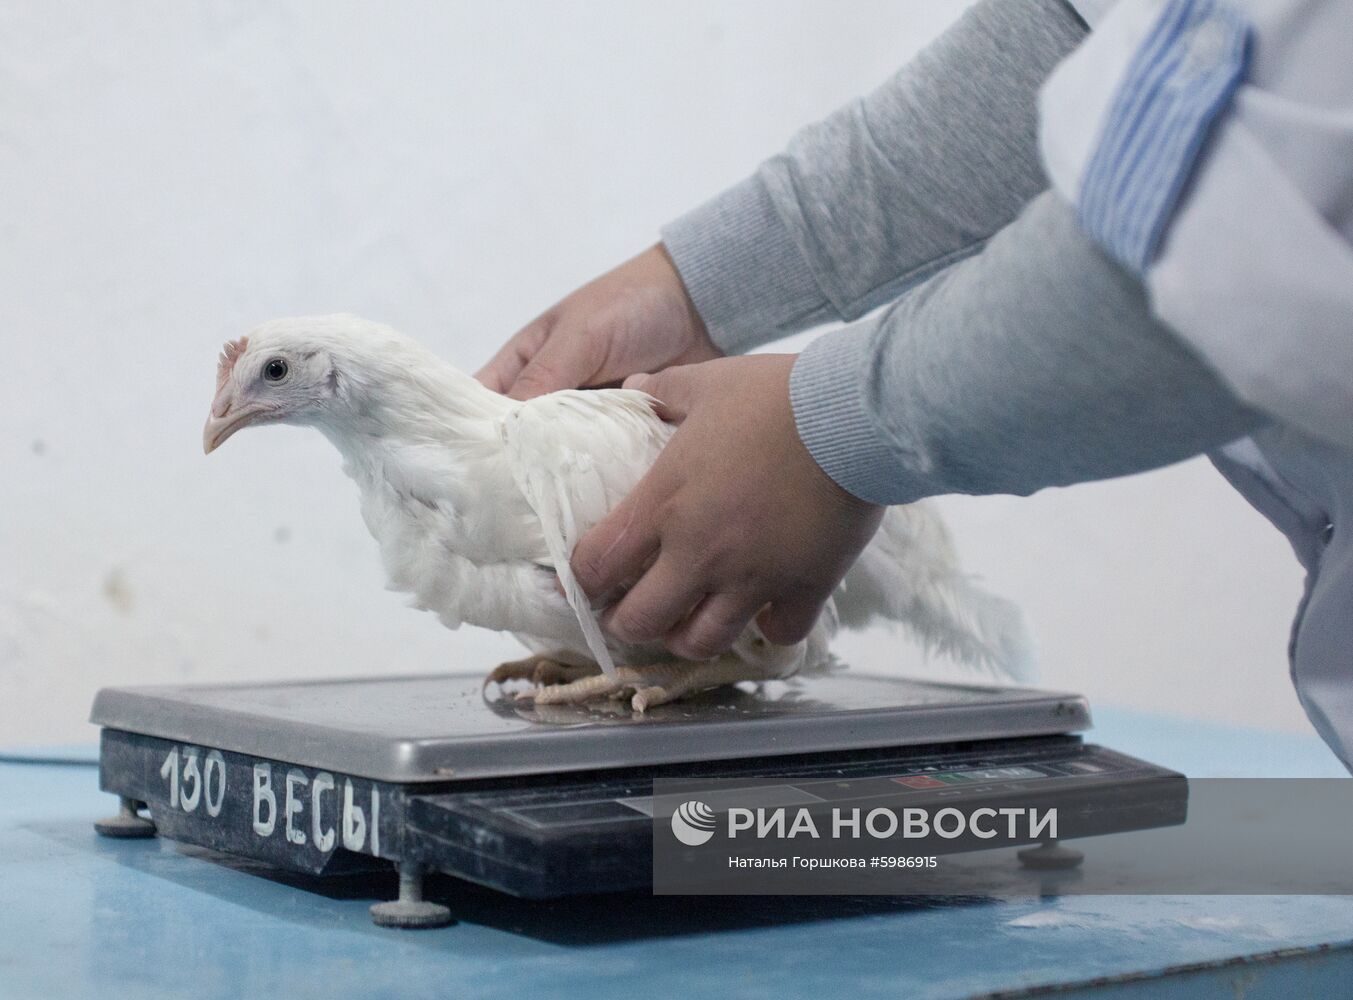 Птицефабрика "Пышминская" в Тюменской области